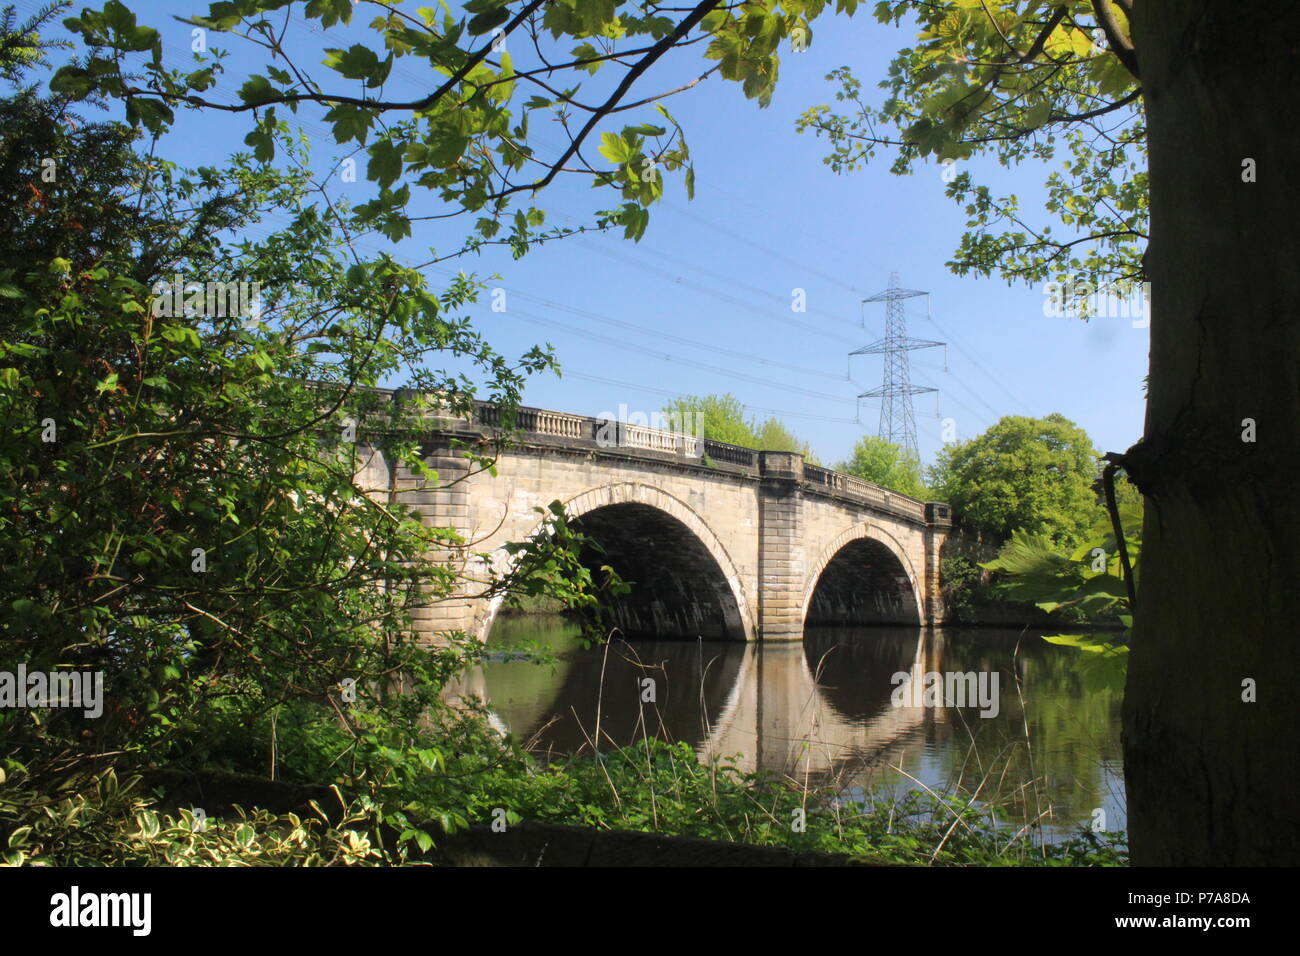 Le vieux pont à péage de John Carr a terminé 1804 The Old Great North Road Ferrybridge Knottingley West Yorkshire Britain, Royaume-Uni Banque D'Images